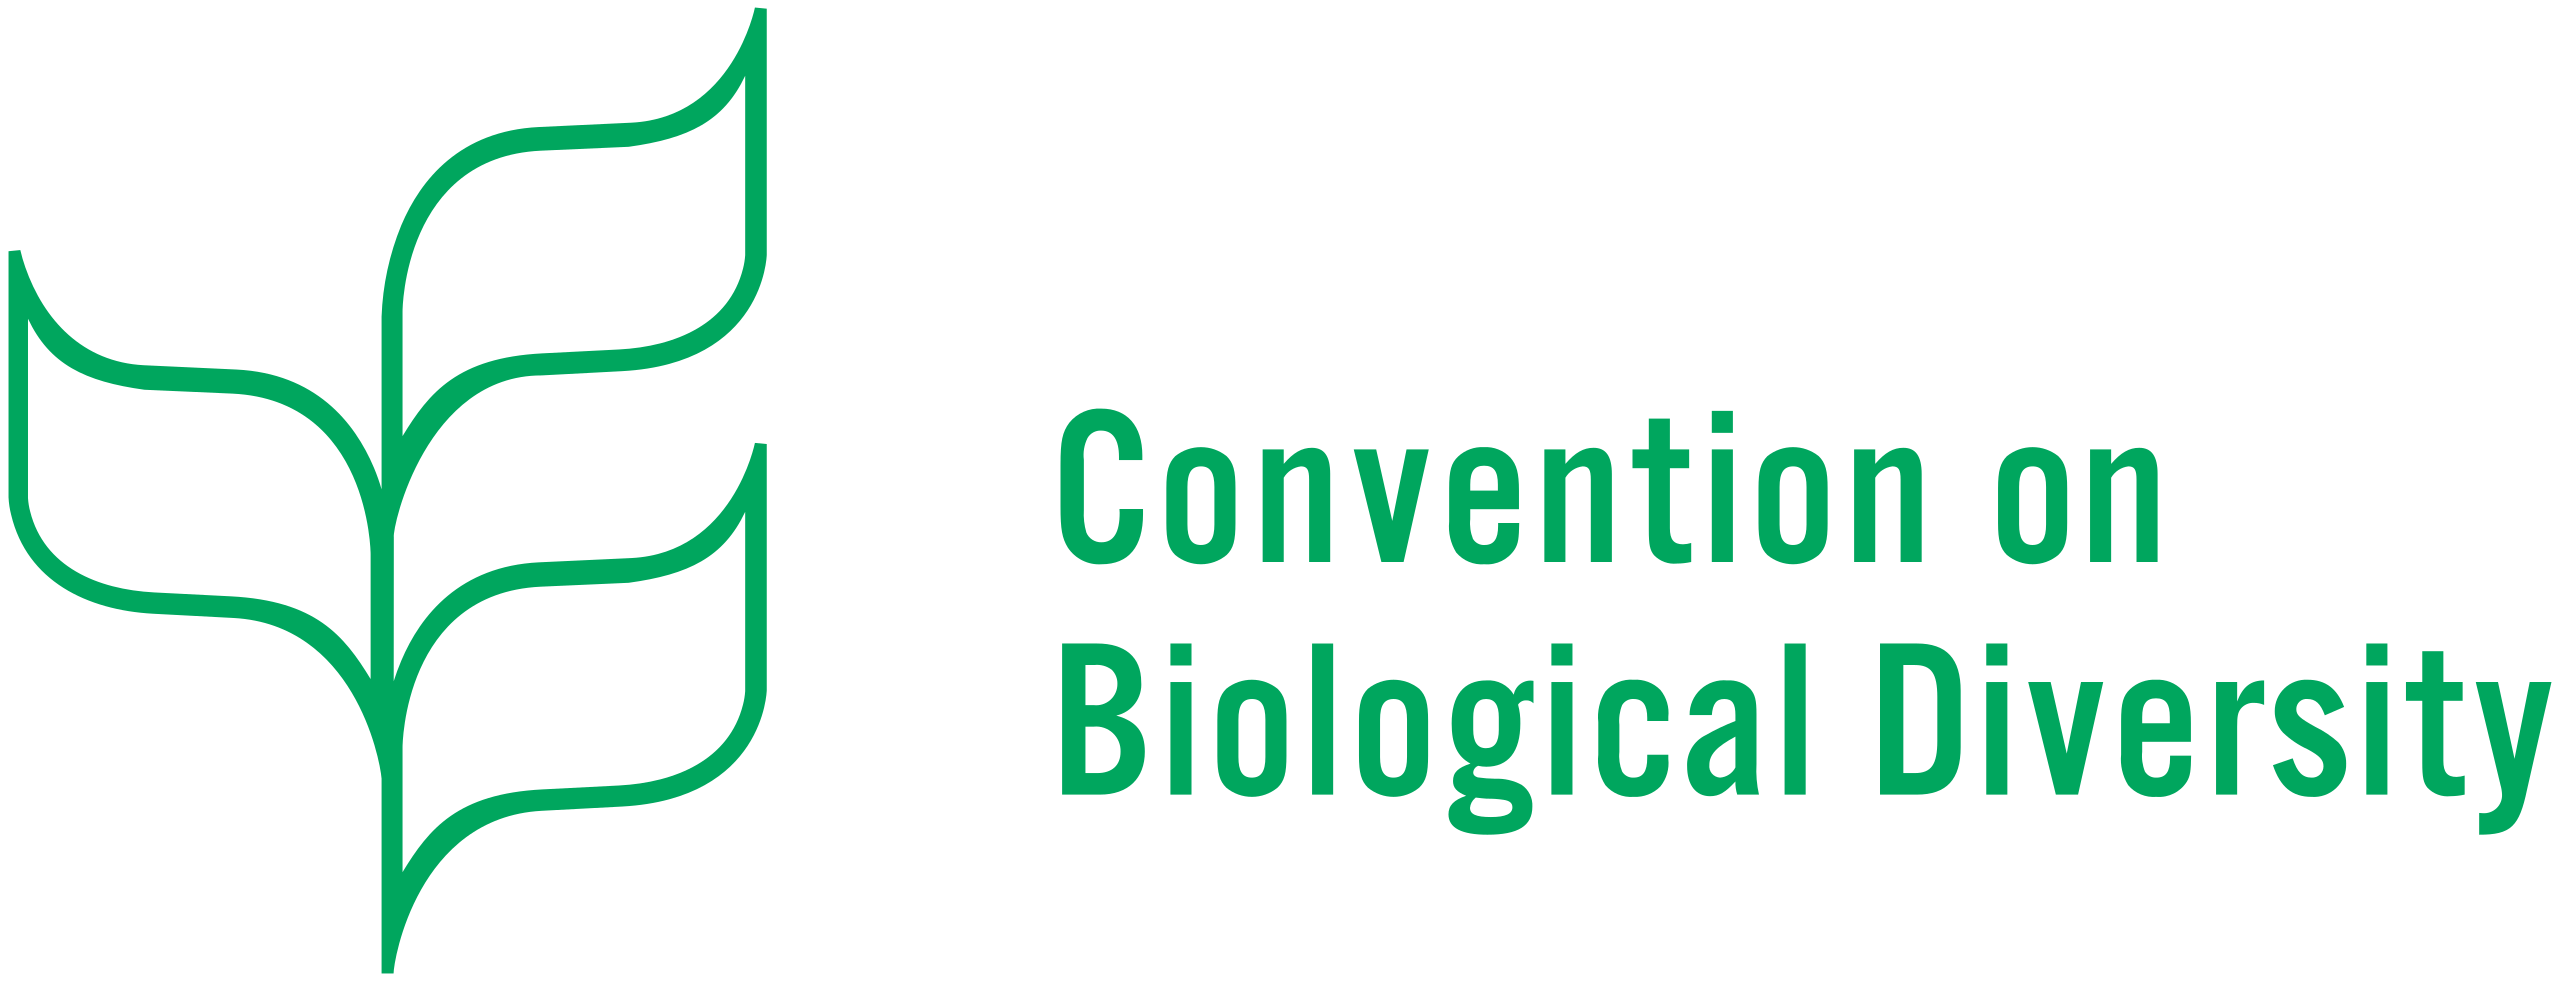 Convention on Biological Diversity logo.svg